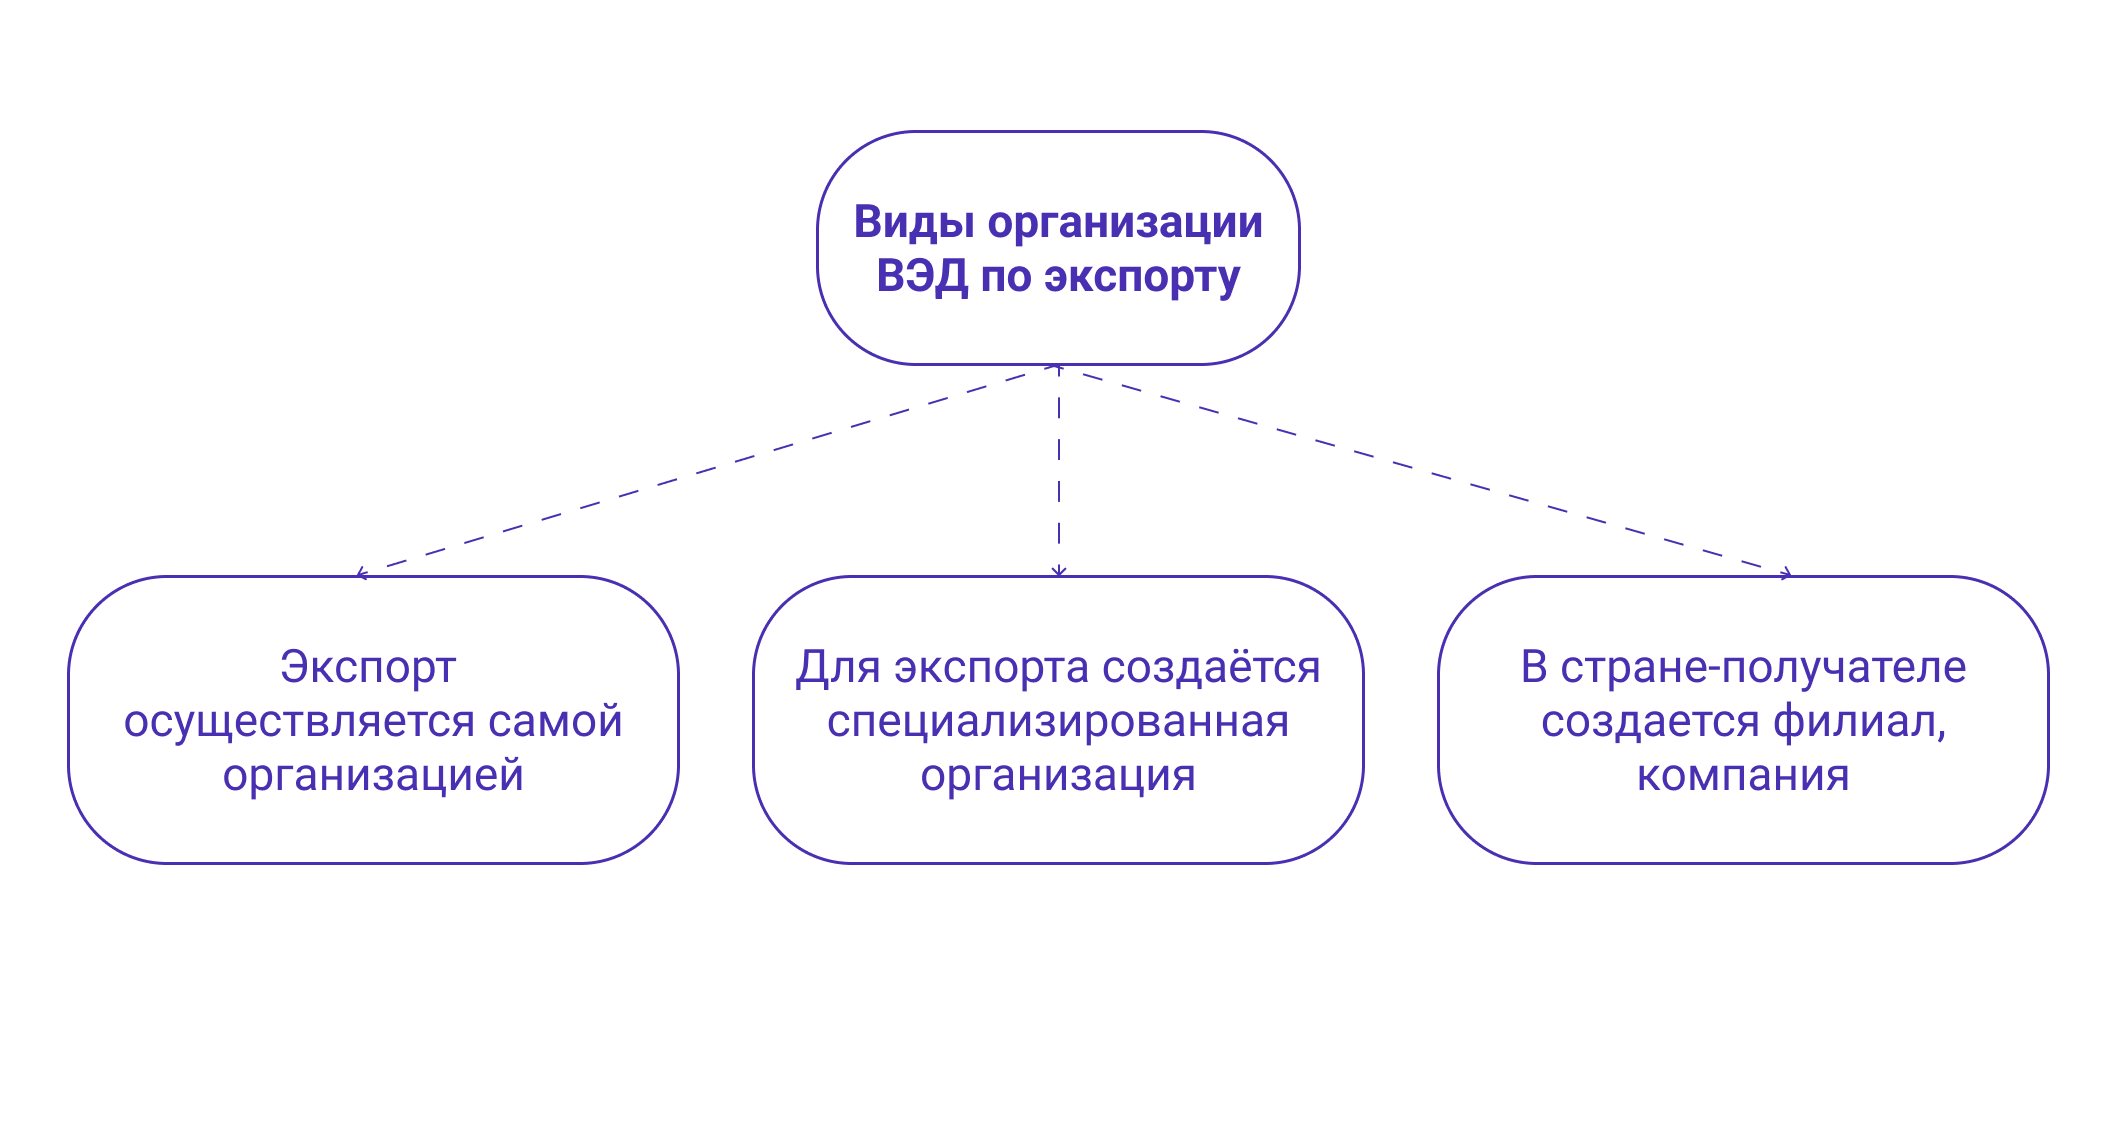 Схема видов организации ВЭД по экспорту